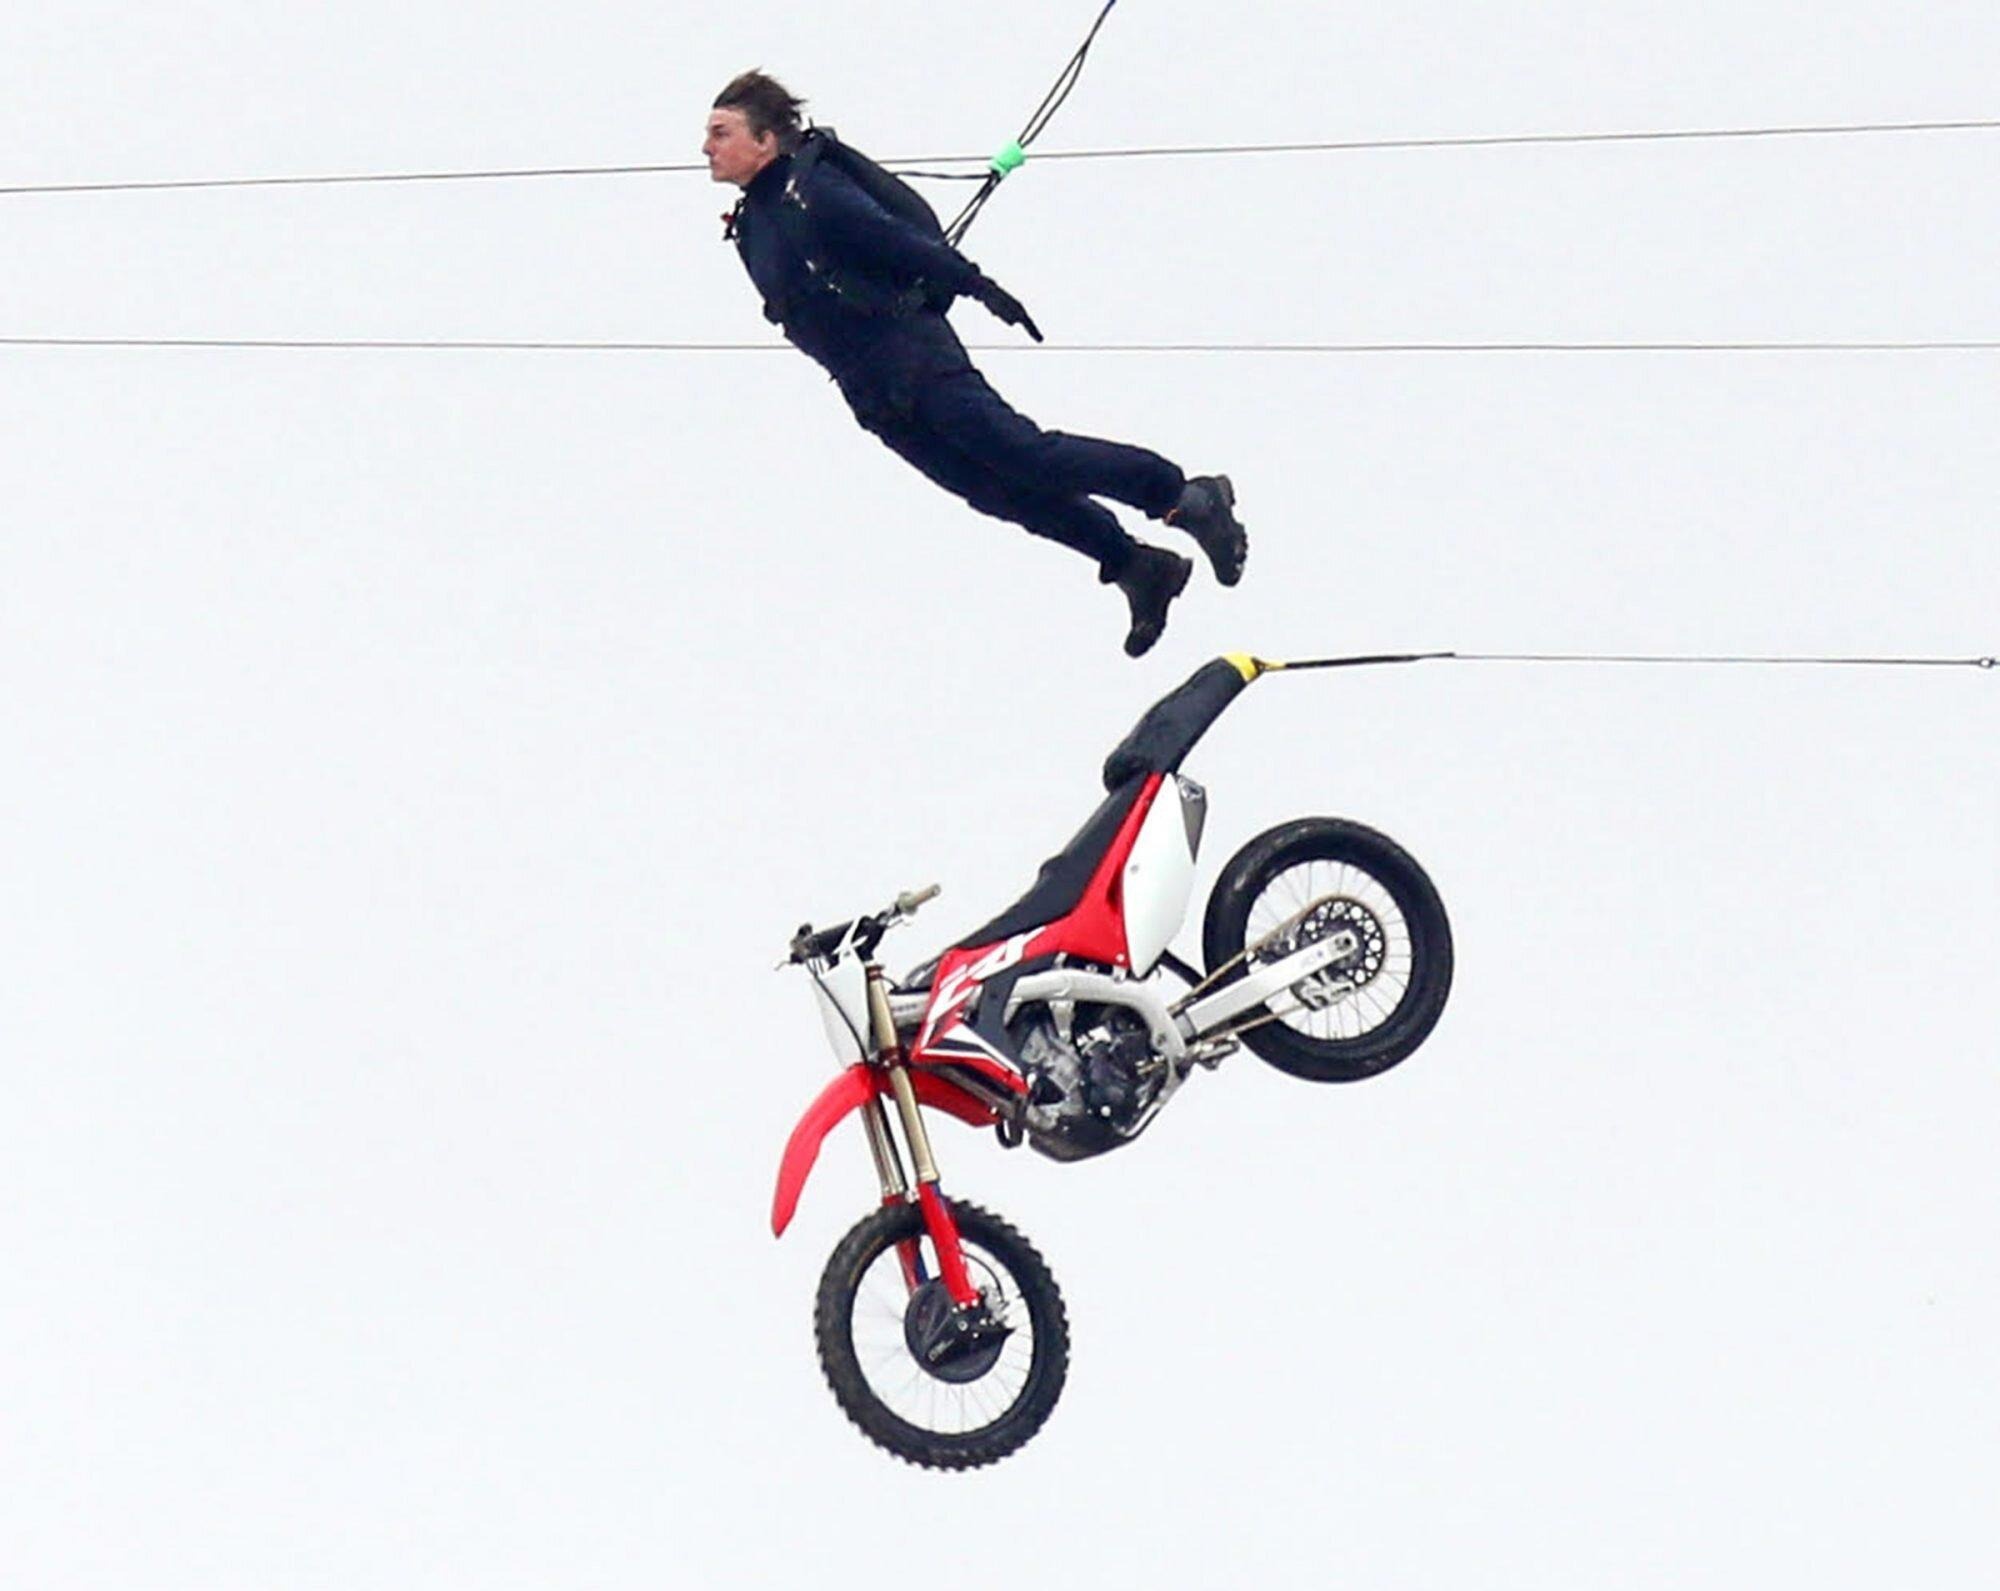 Tom Cruise diễn cảnh lao môtô xuống vực 13.000 lần - Ảnh 1.